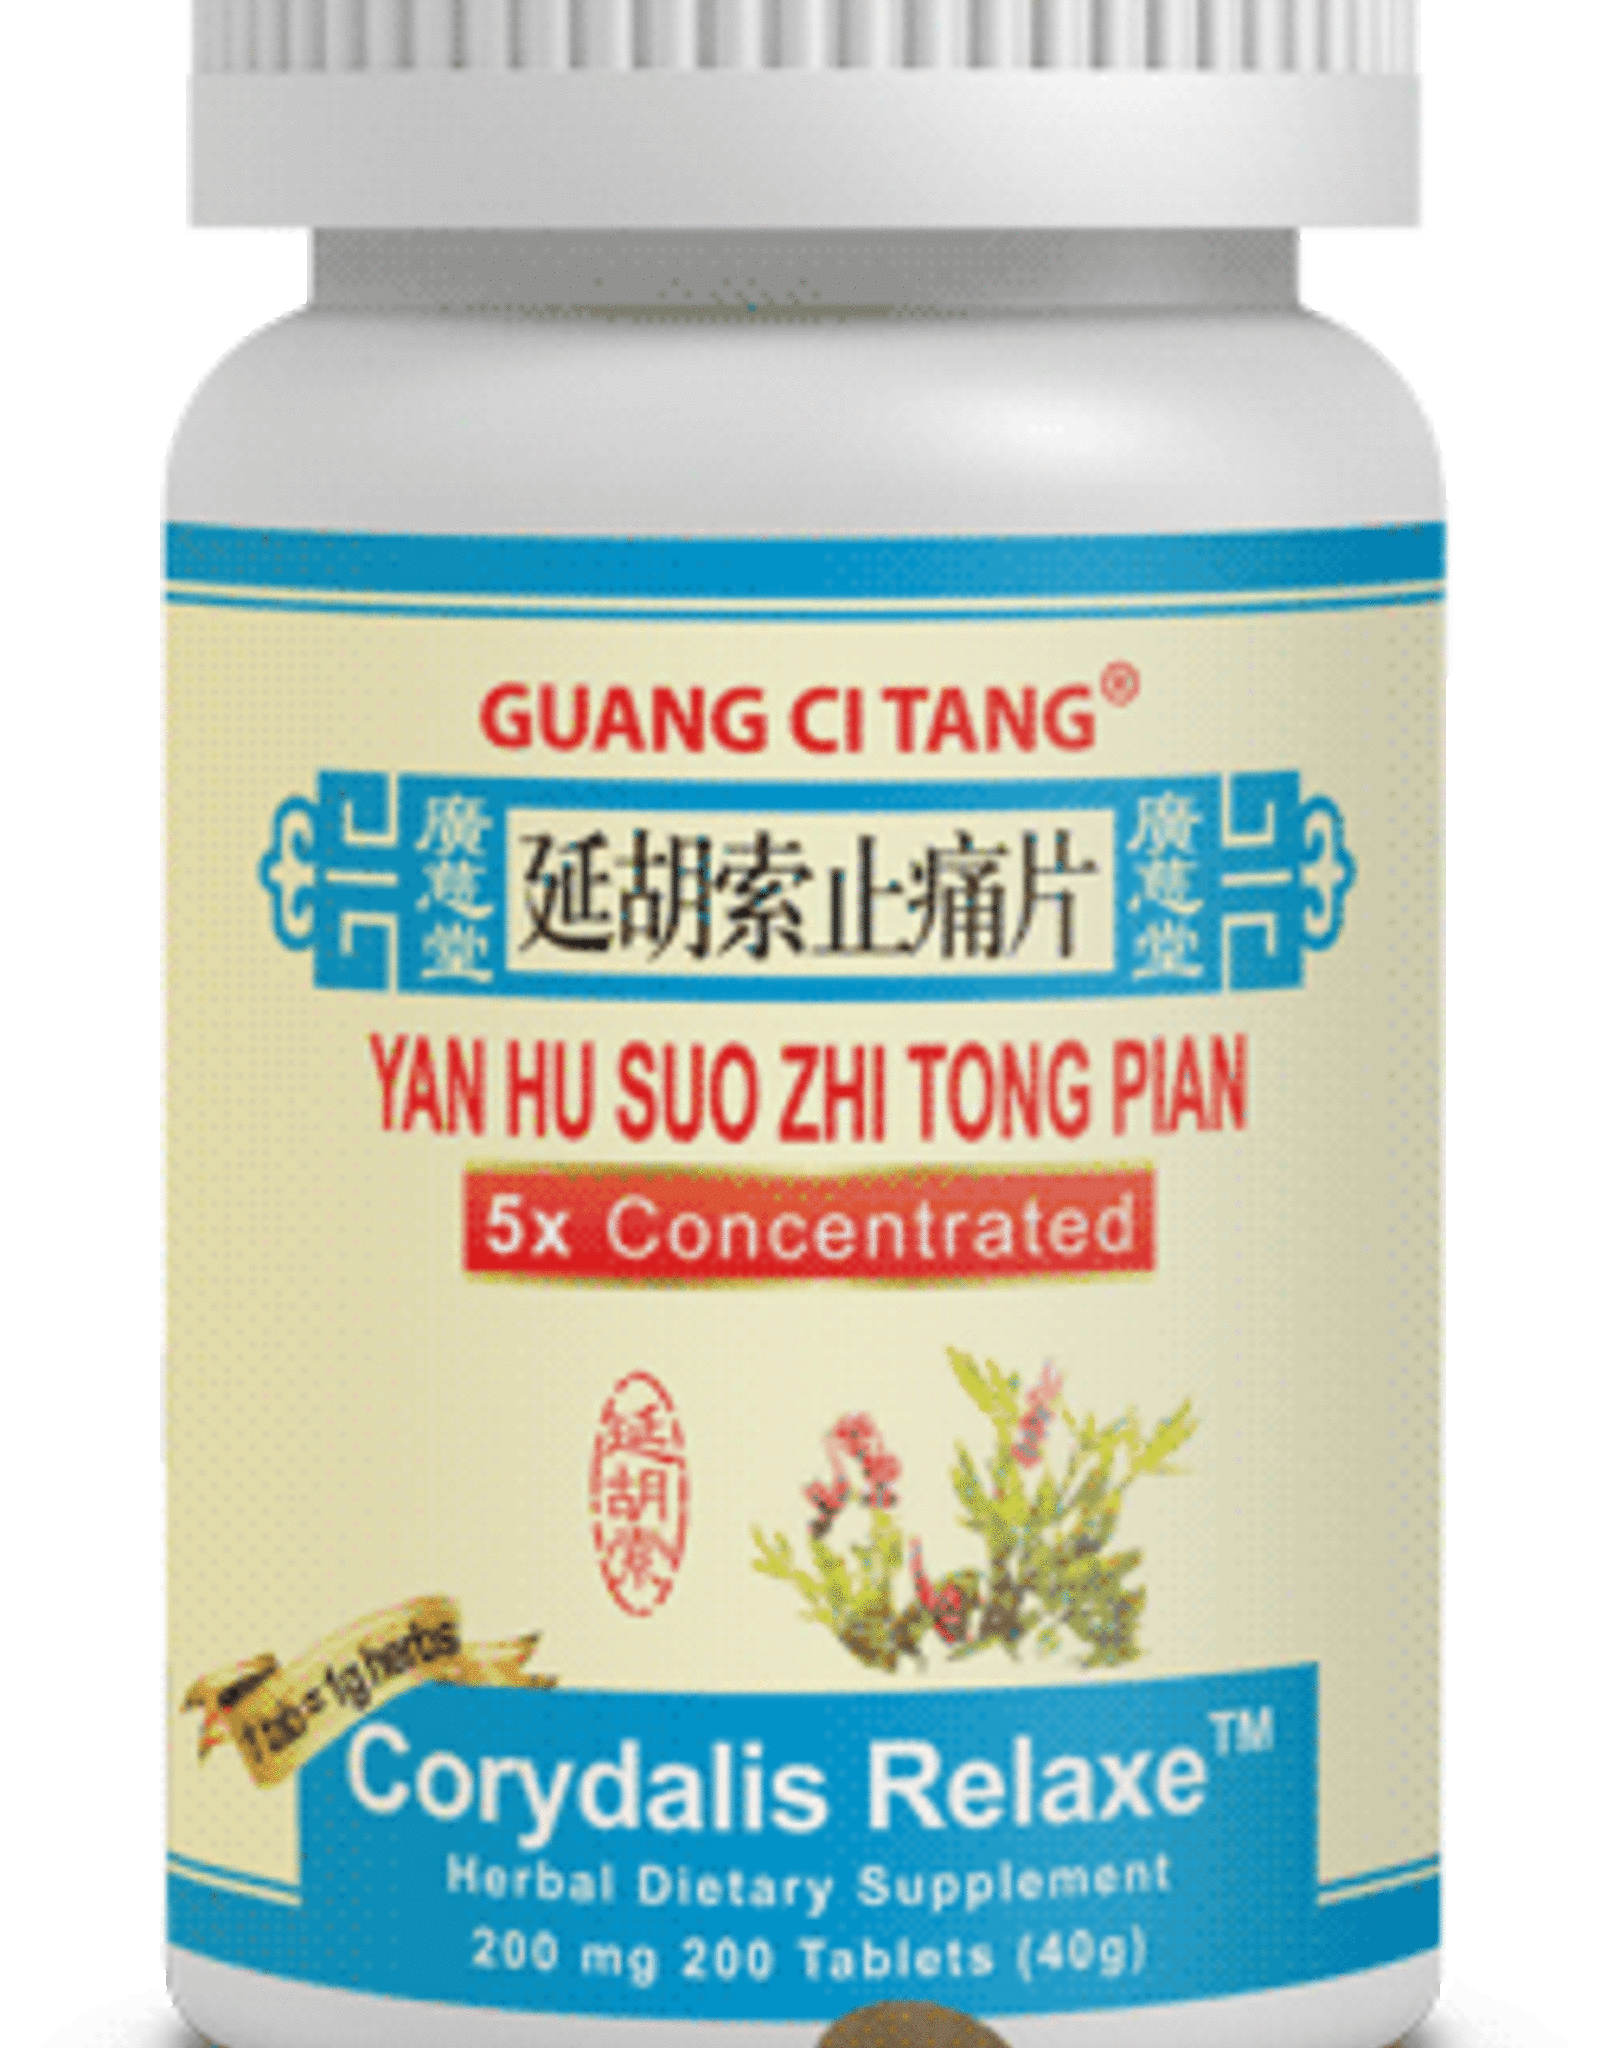 Guang Ci Tang Corydalis Relaxe ( yan hu suo zhi tong pian)